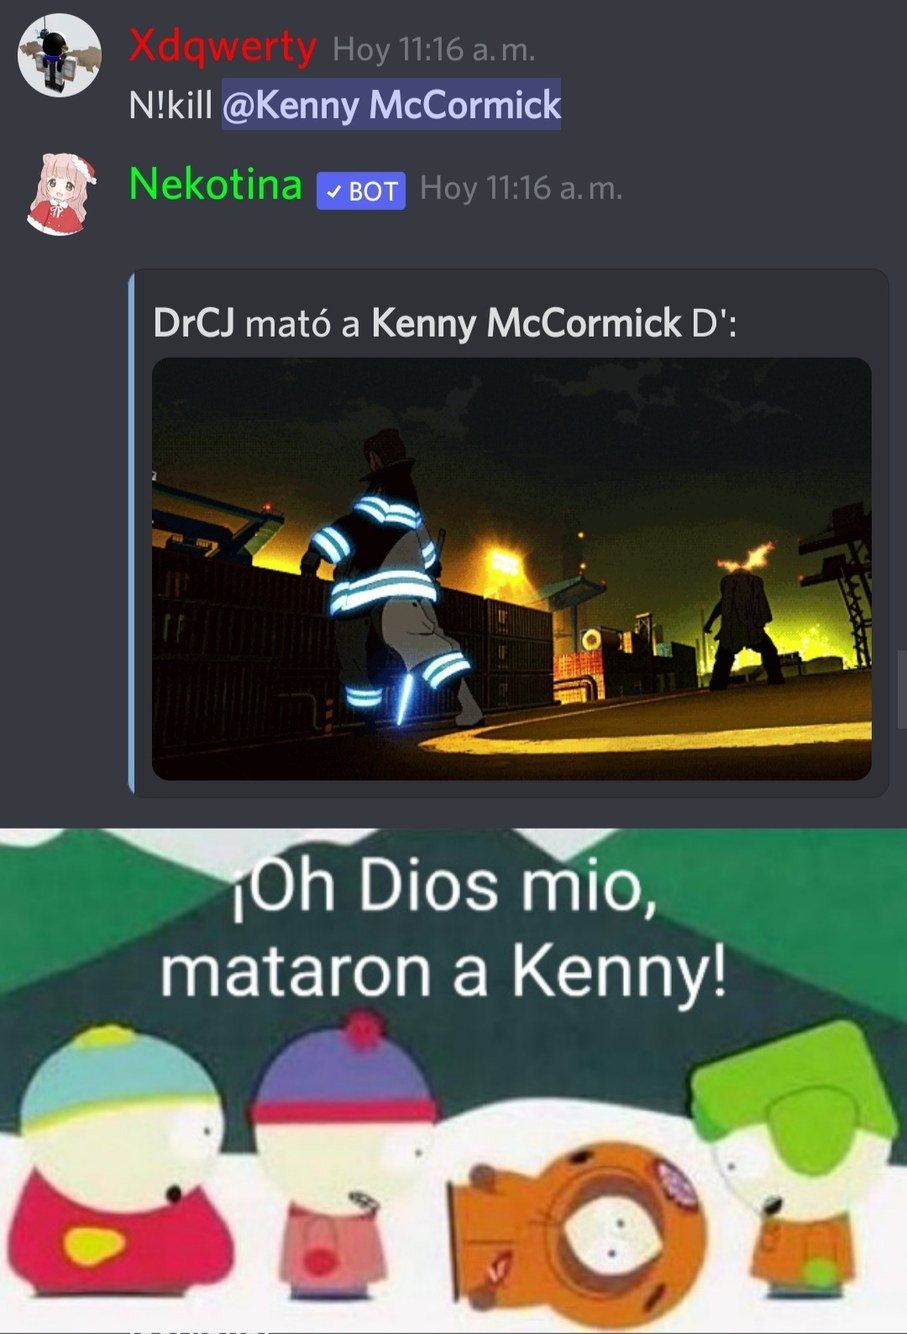 ¡Oh Dios mio, mataron a Kenny! - meme